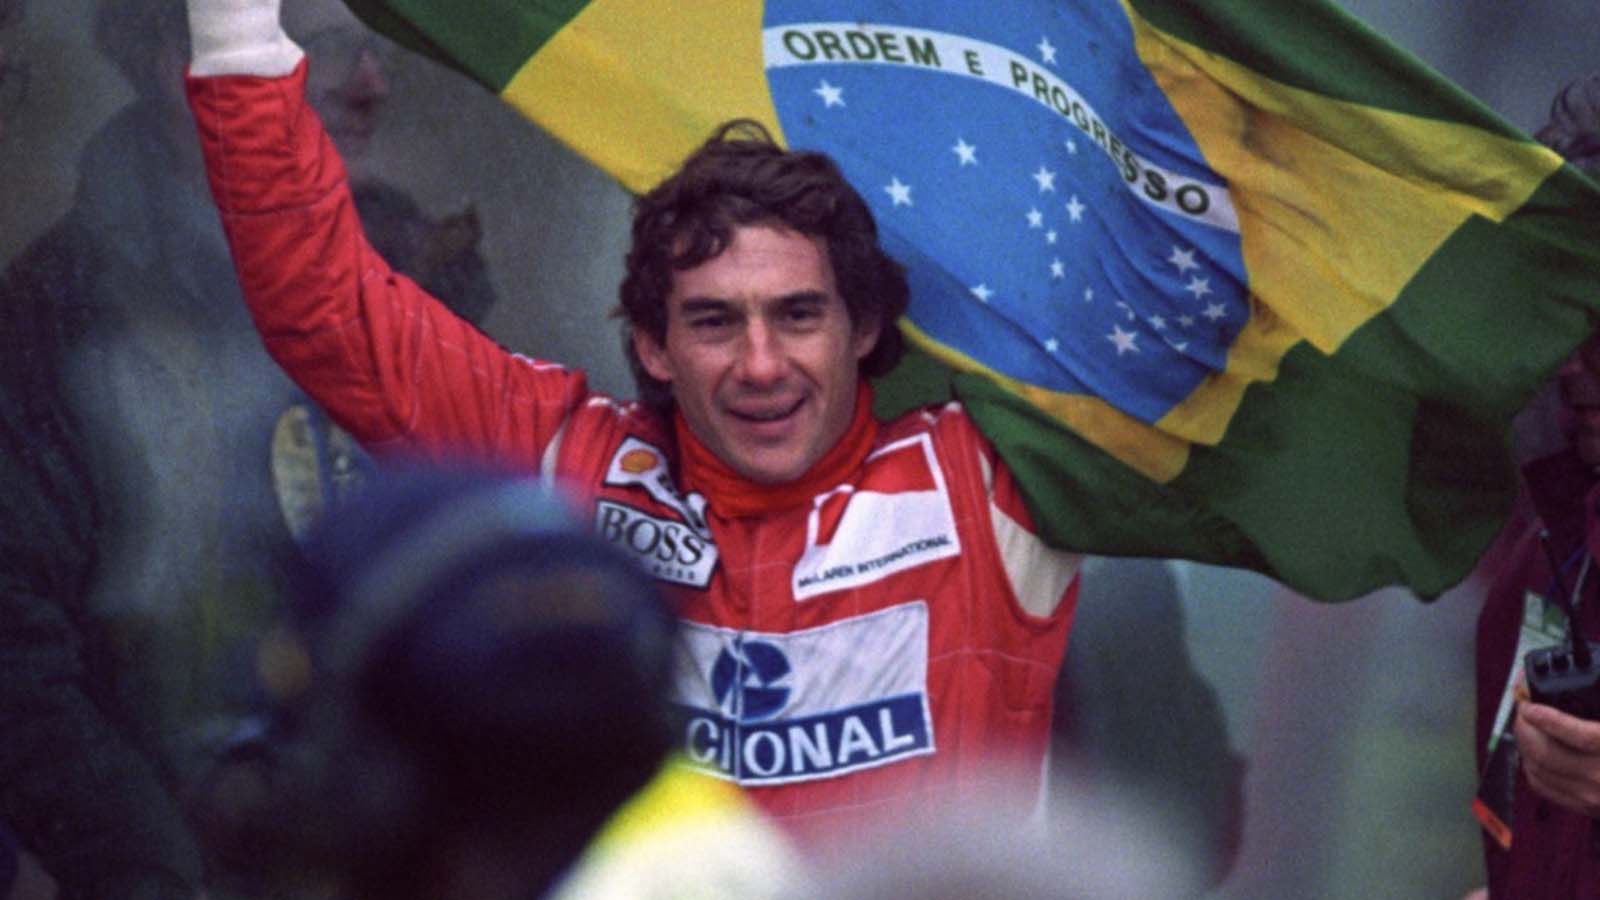 Stiže nova Netflixova miniserija o trostrukom svjetskom prvaku Formule 1 Ayrtonu Senni. Netflix je objavio ko će preuzeti glavnu ulogu.